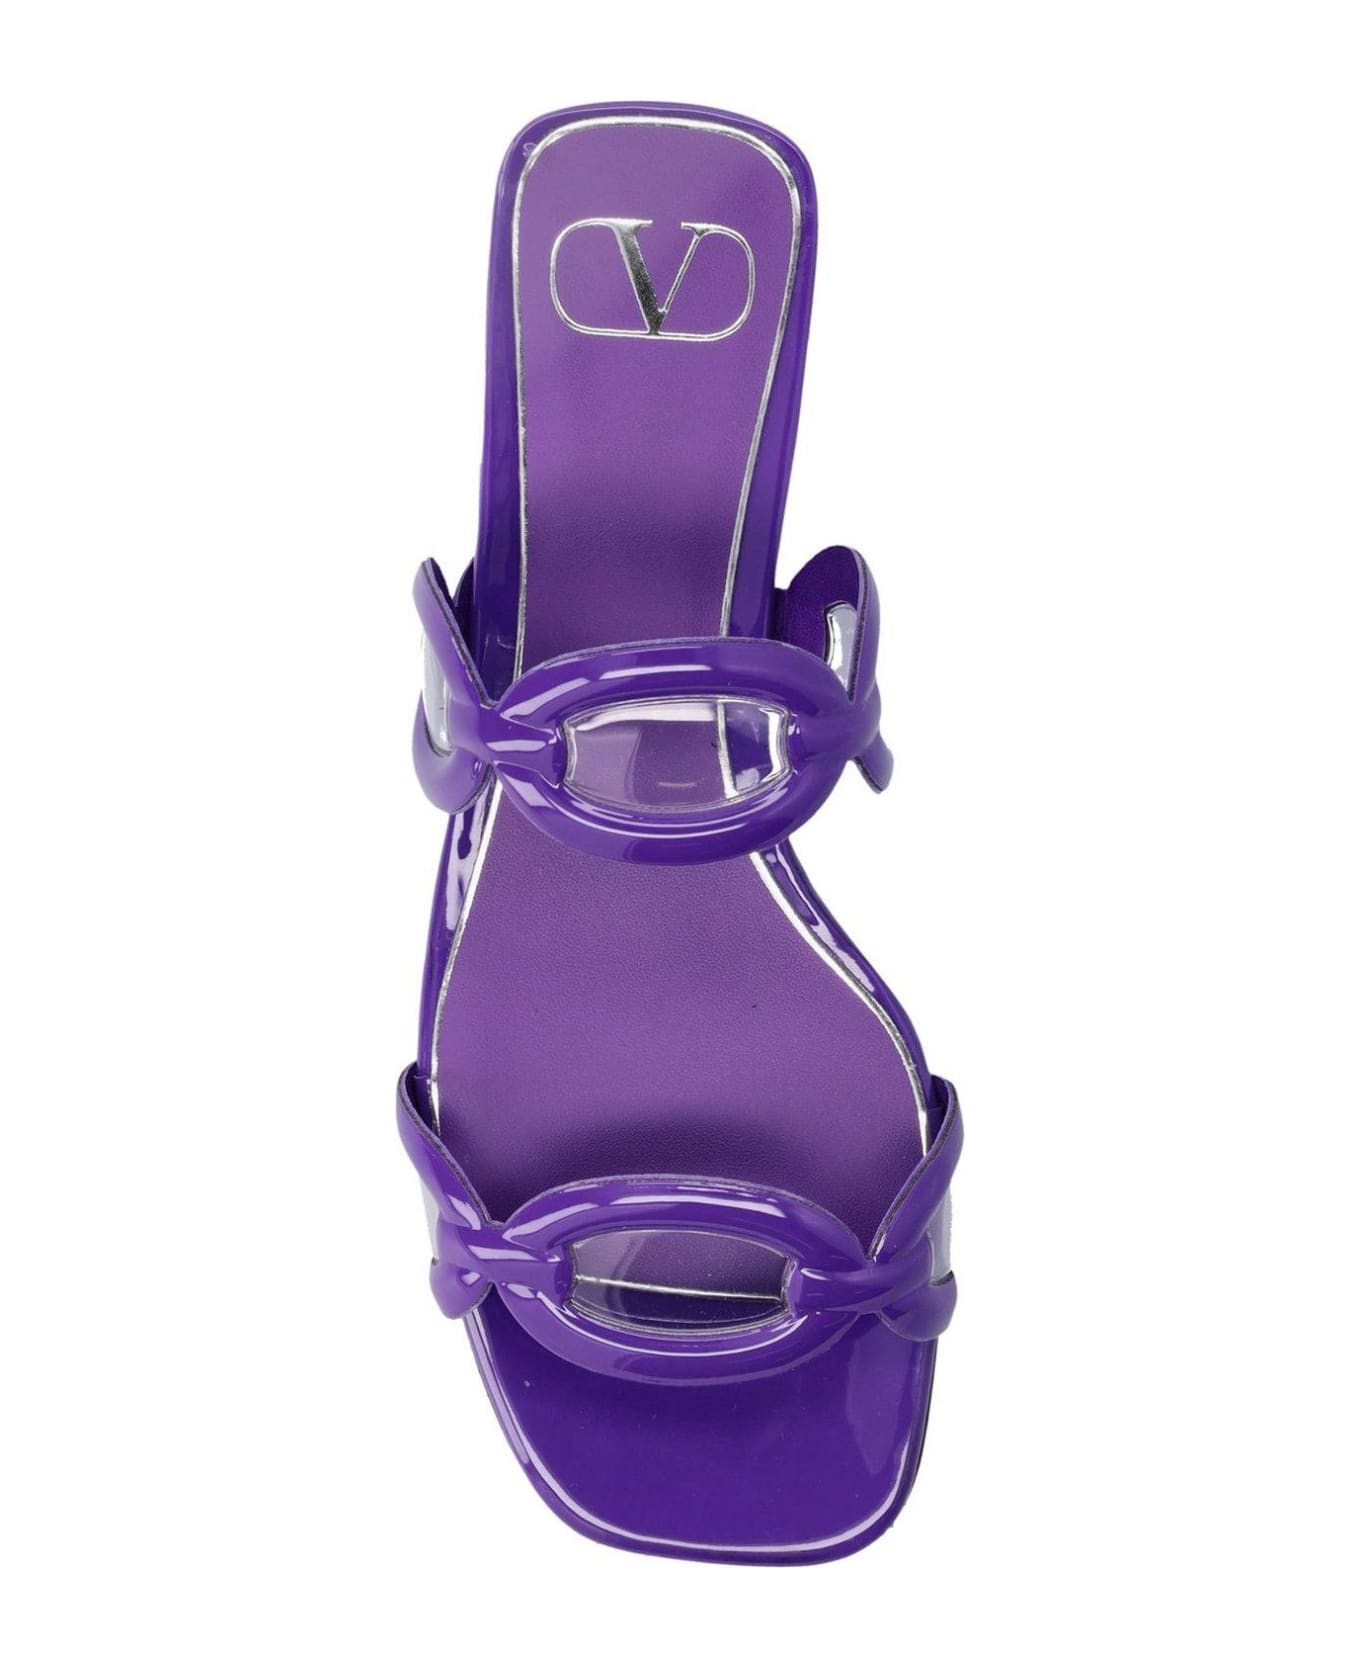 Valentino Garavani Square Toe Slip-on Slides - Purple